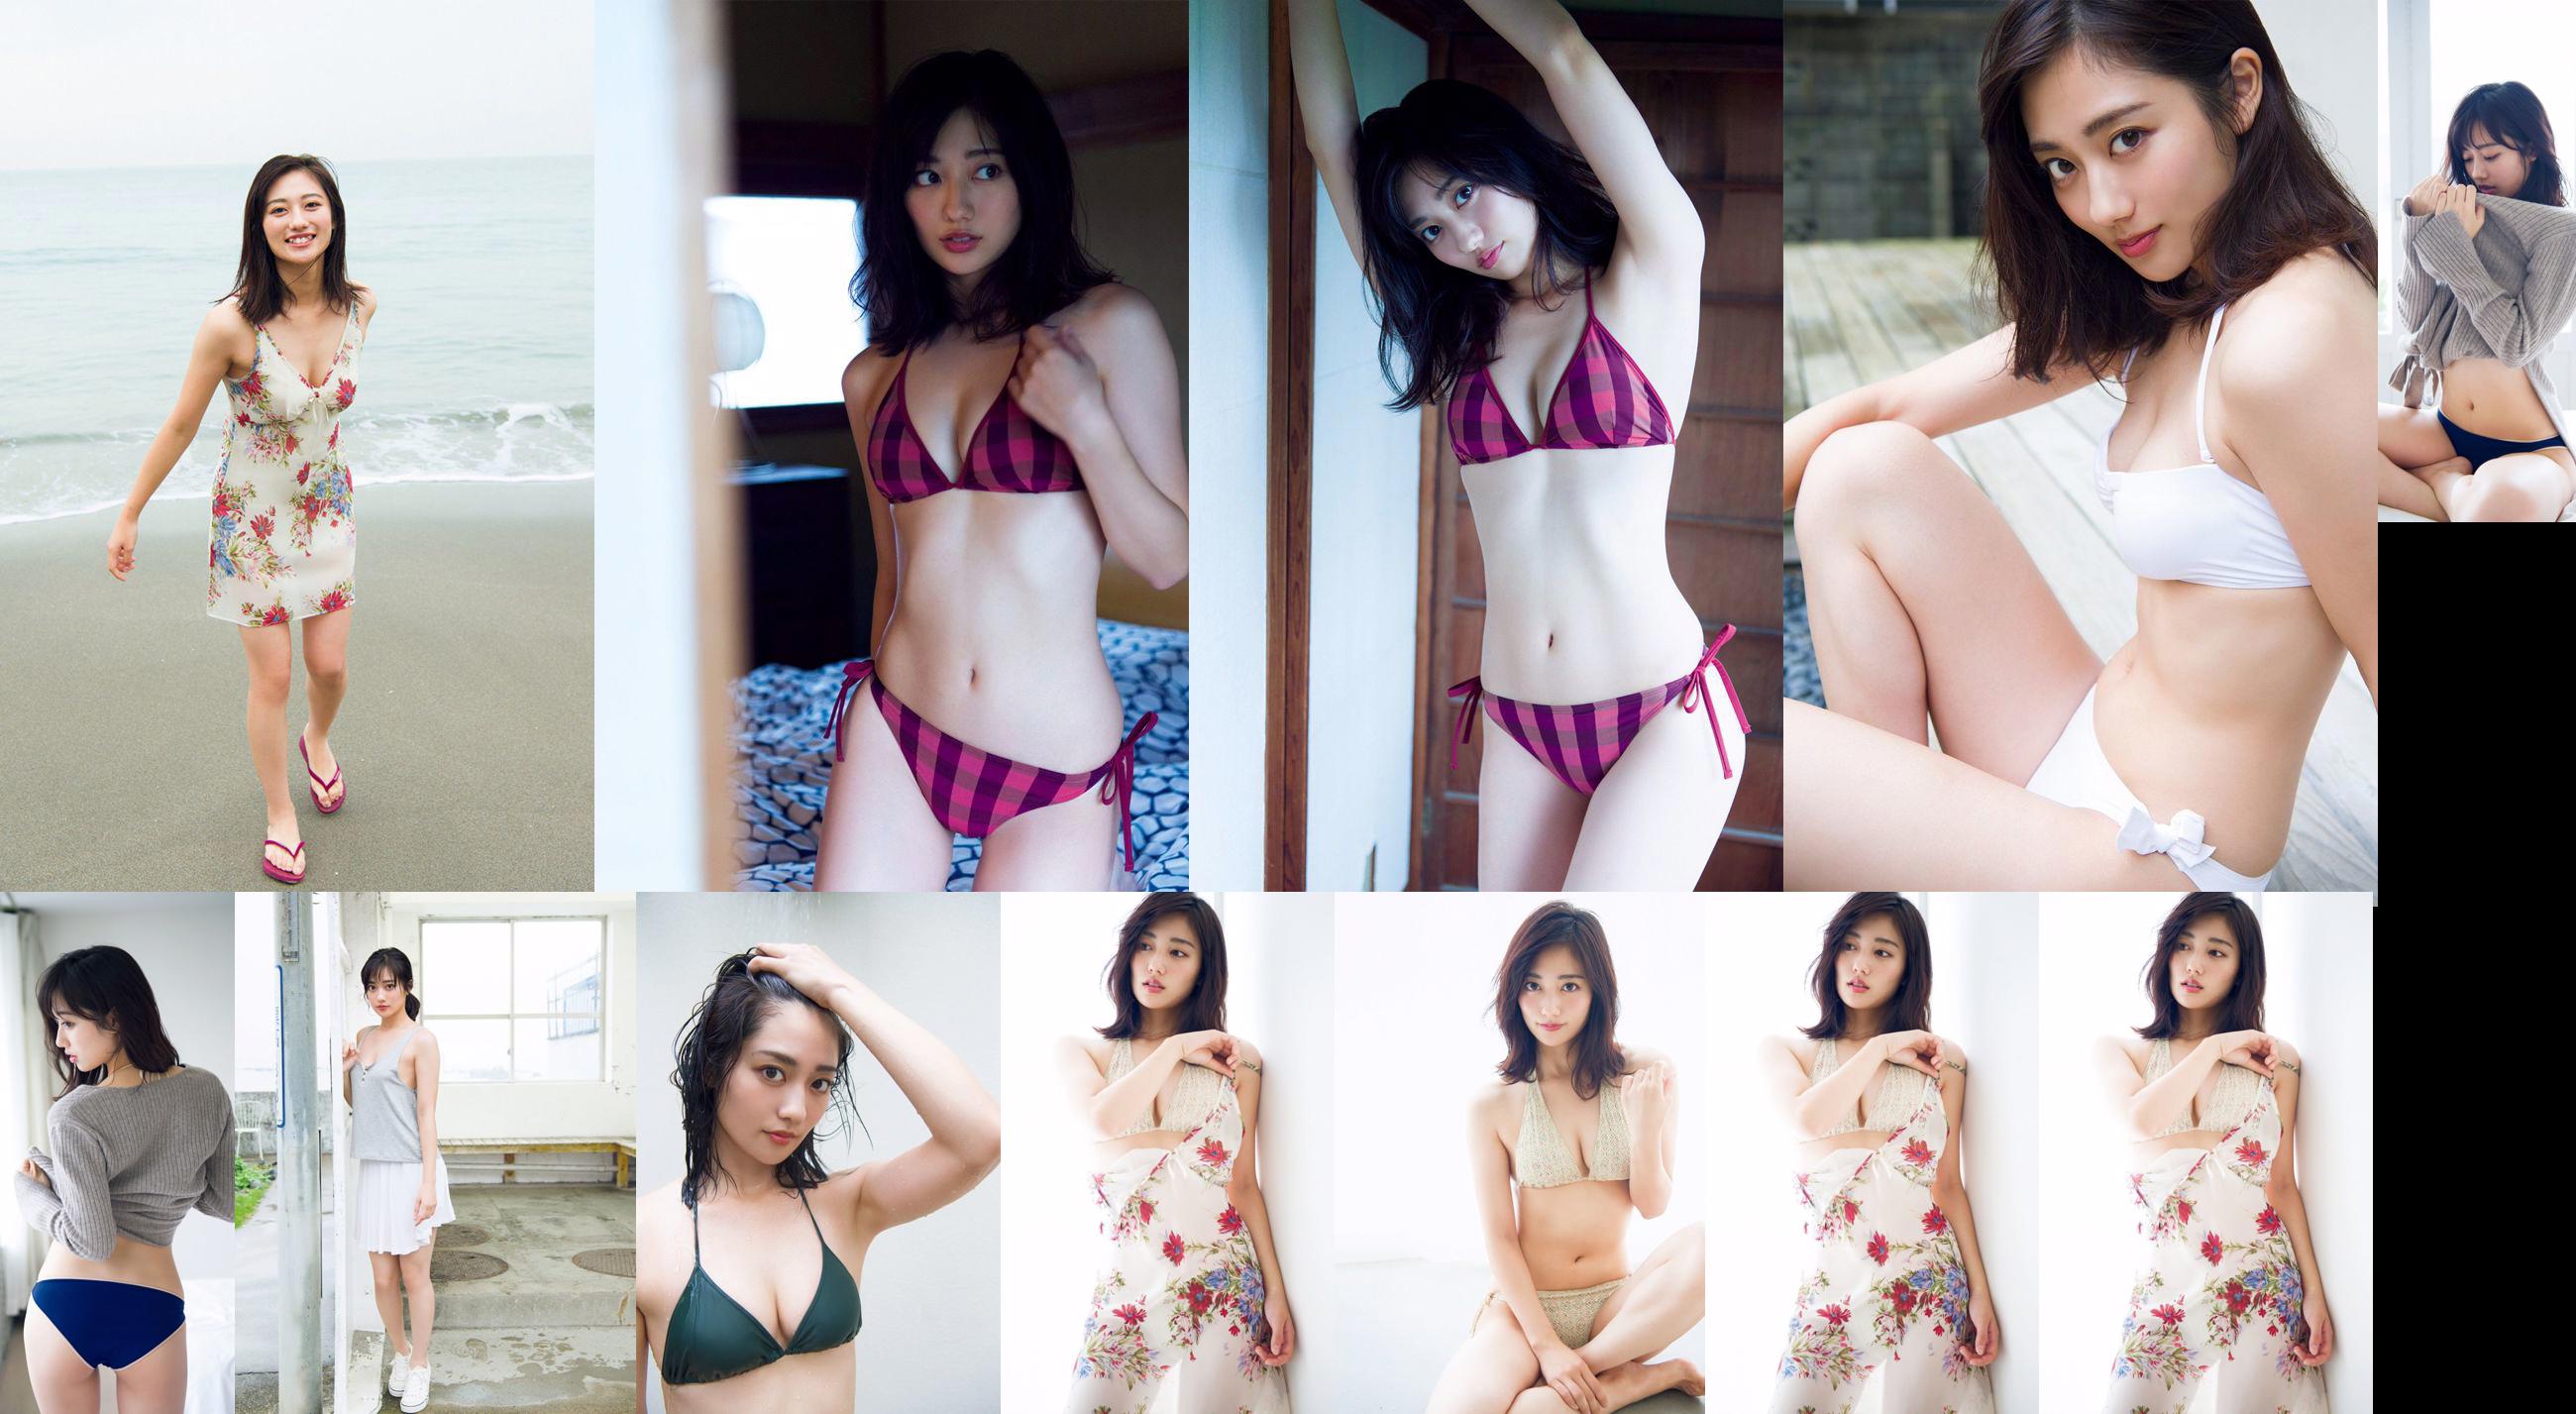 [VIERNES] Okuyama Kazusa "Super Heroína del campo de batalla" Bikini desprotegido "(con animación)" Foto No.197238 Página 4